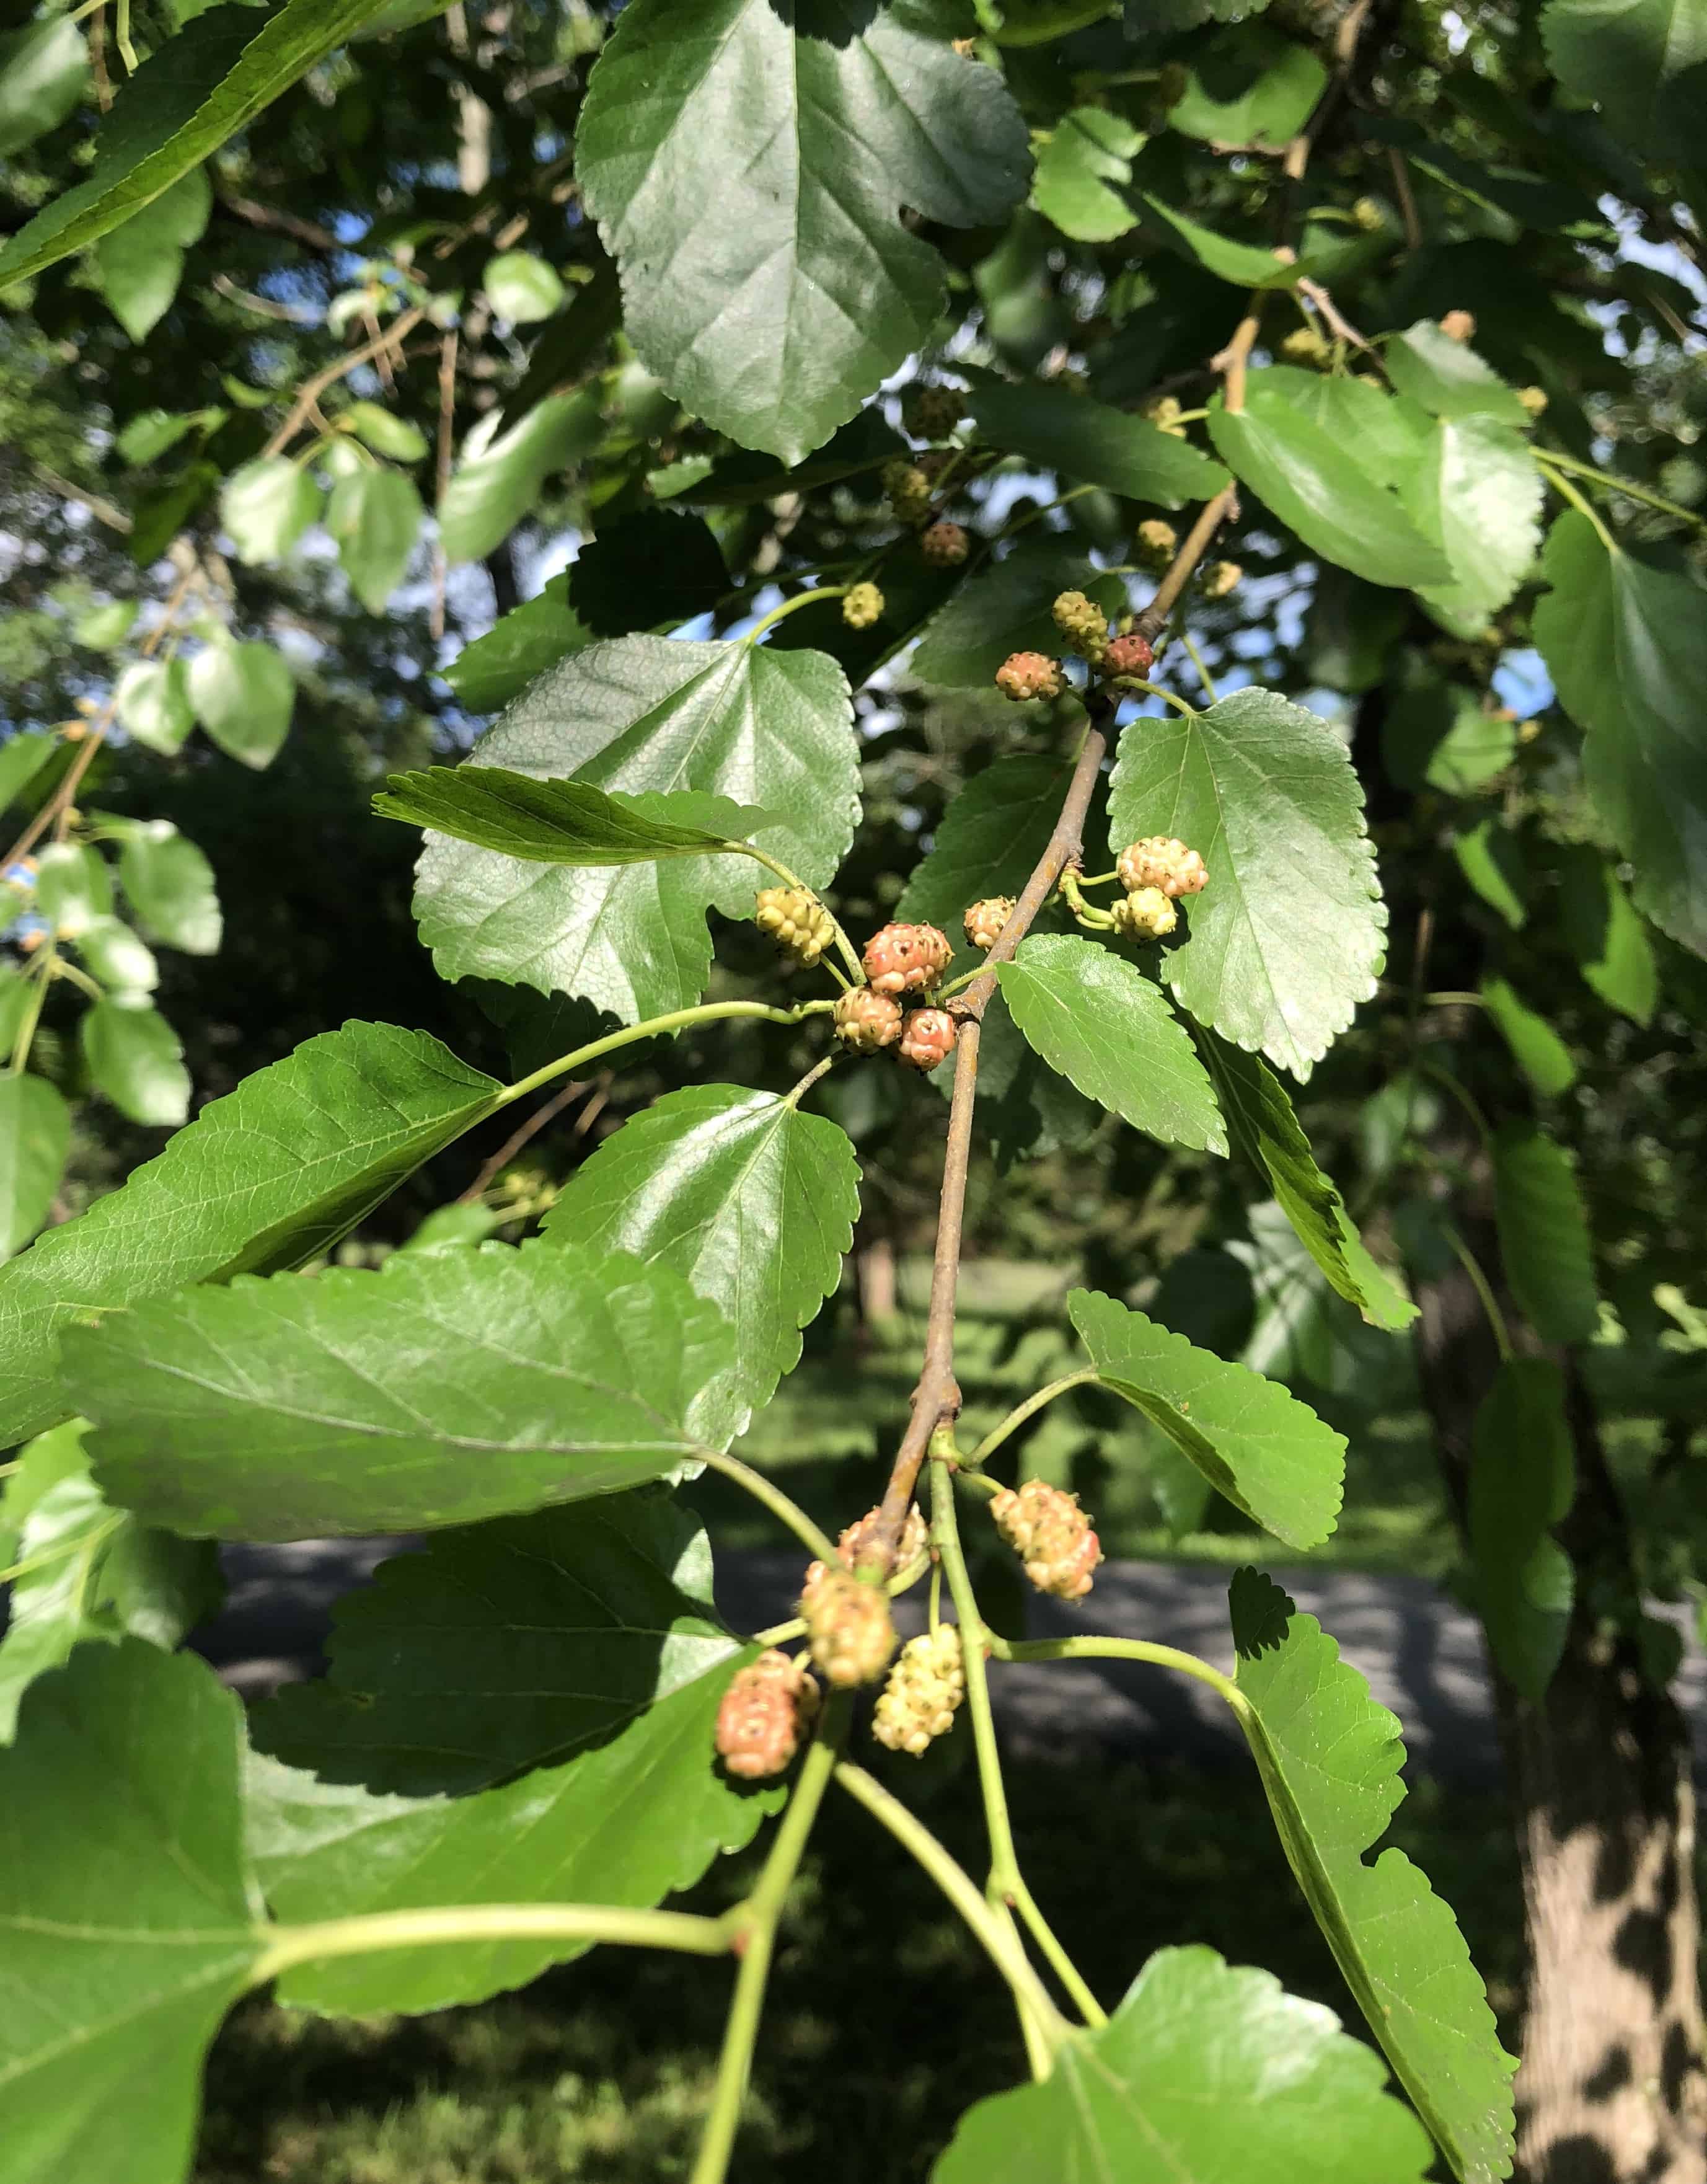 Fallen mulberries